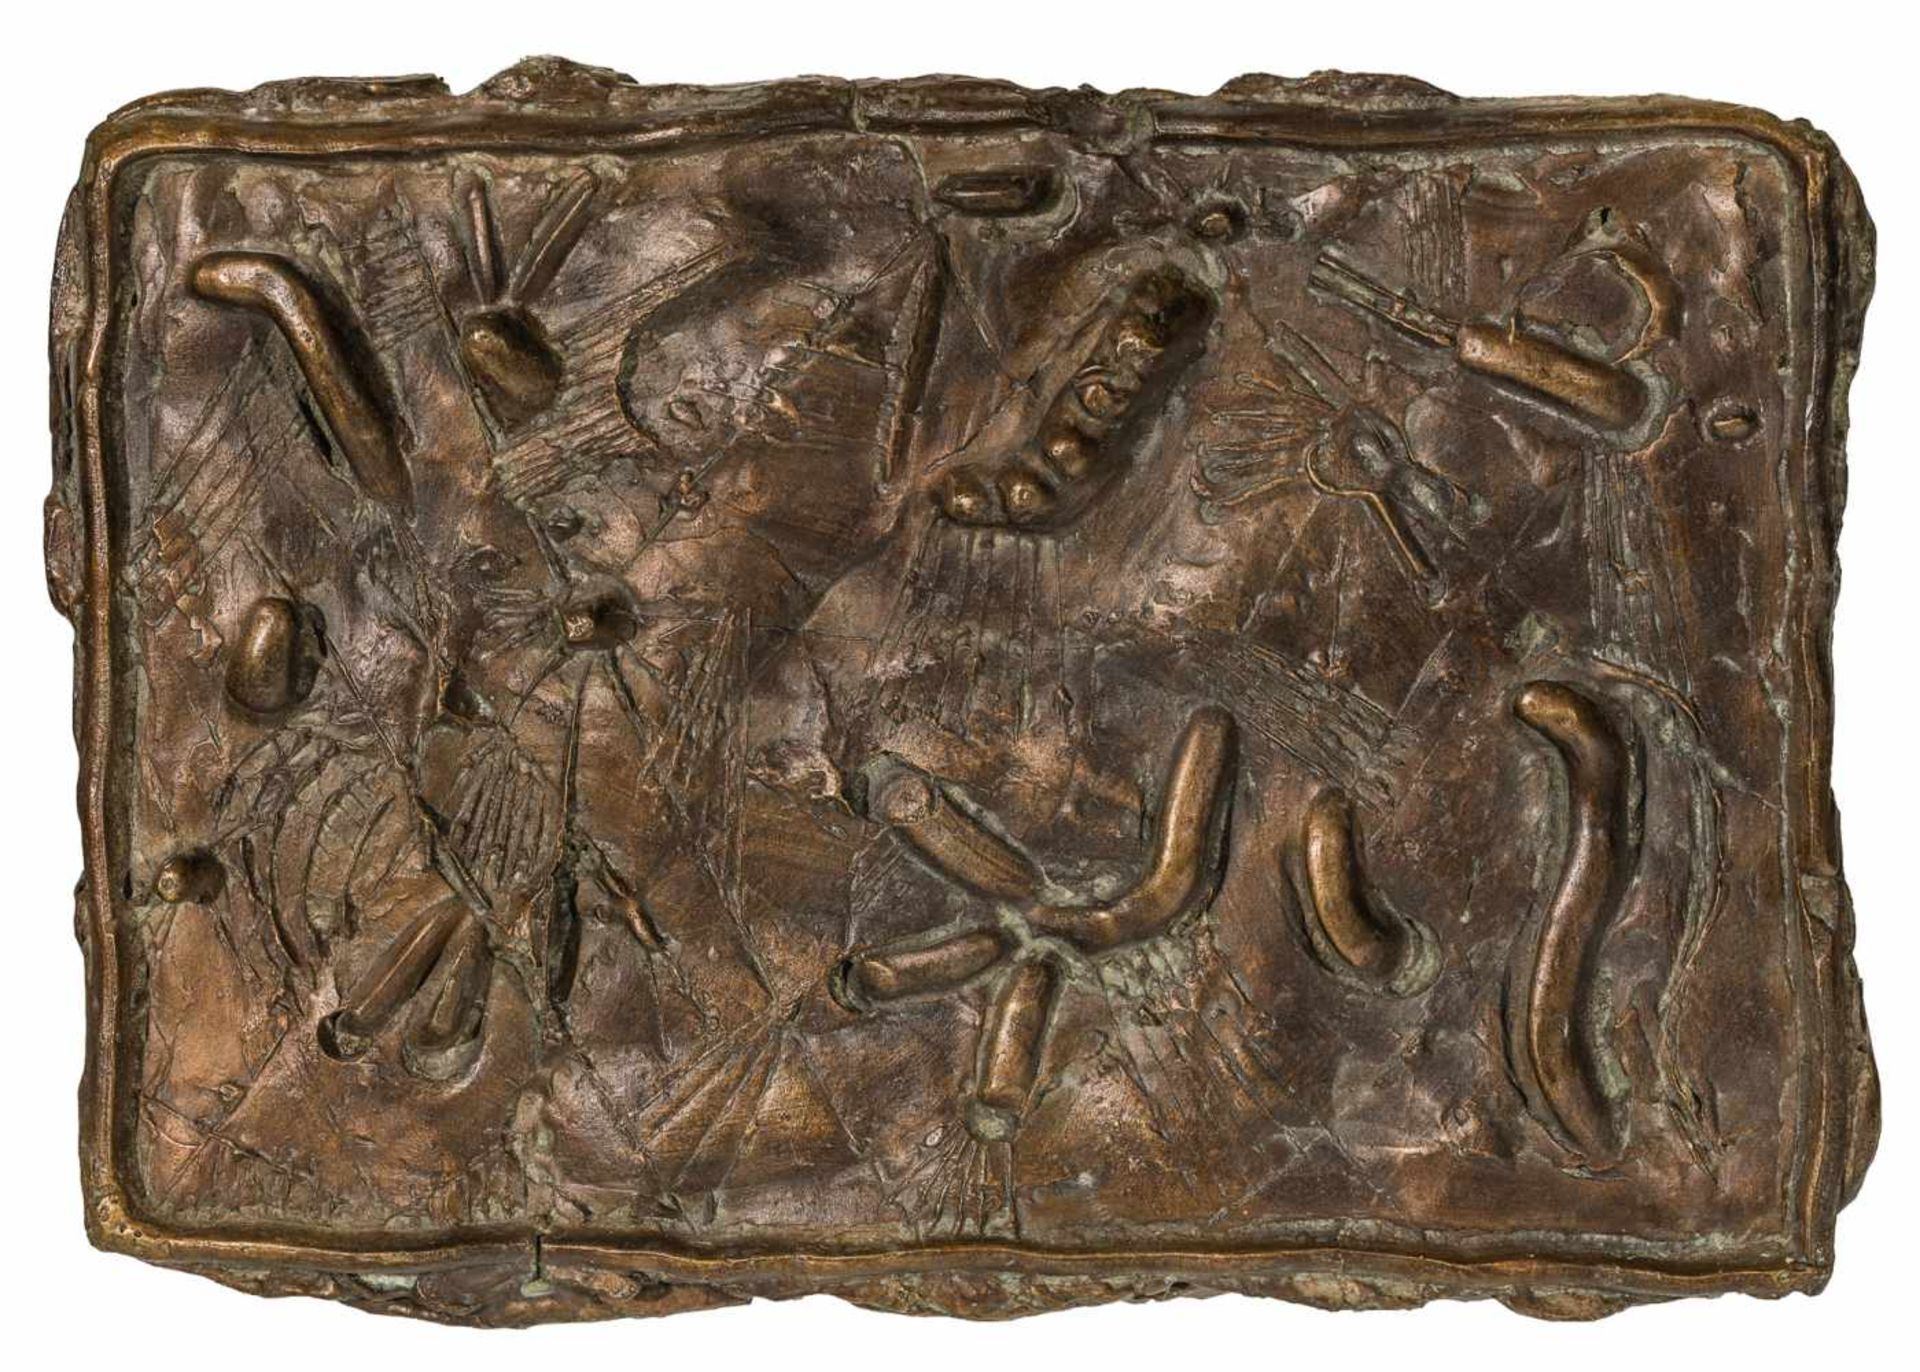 Oswald OberhuberMeran 1931 *SONNE IBronze patiniert (Relief) / bronze patinated (relief)33 x 46,5